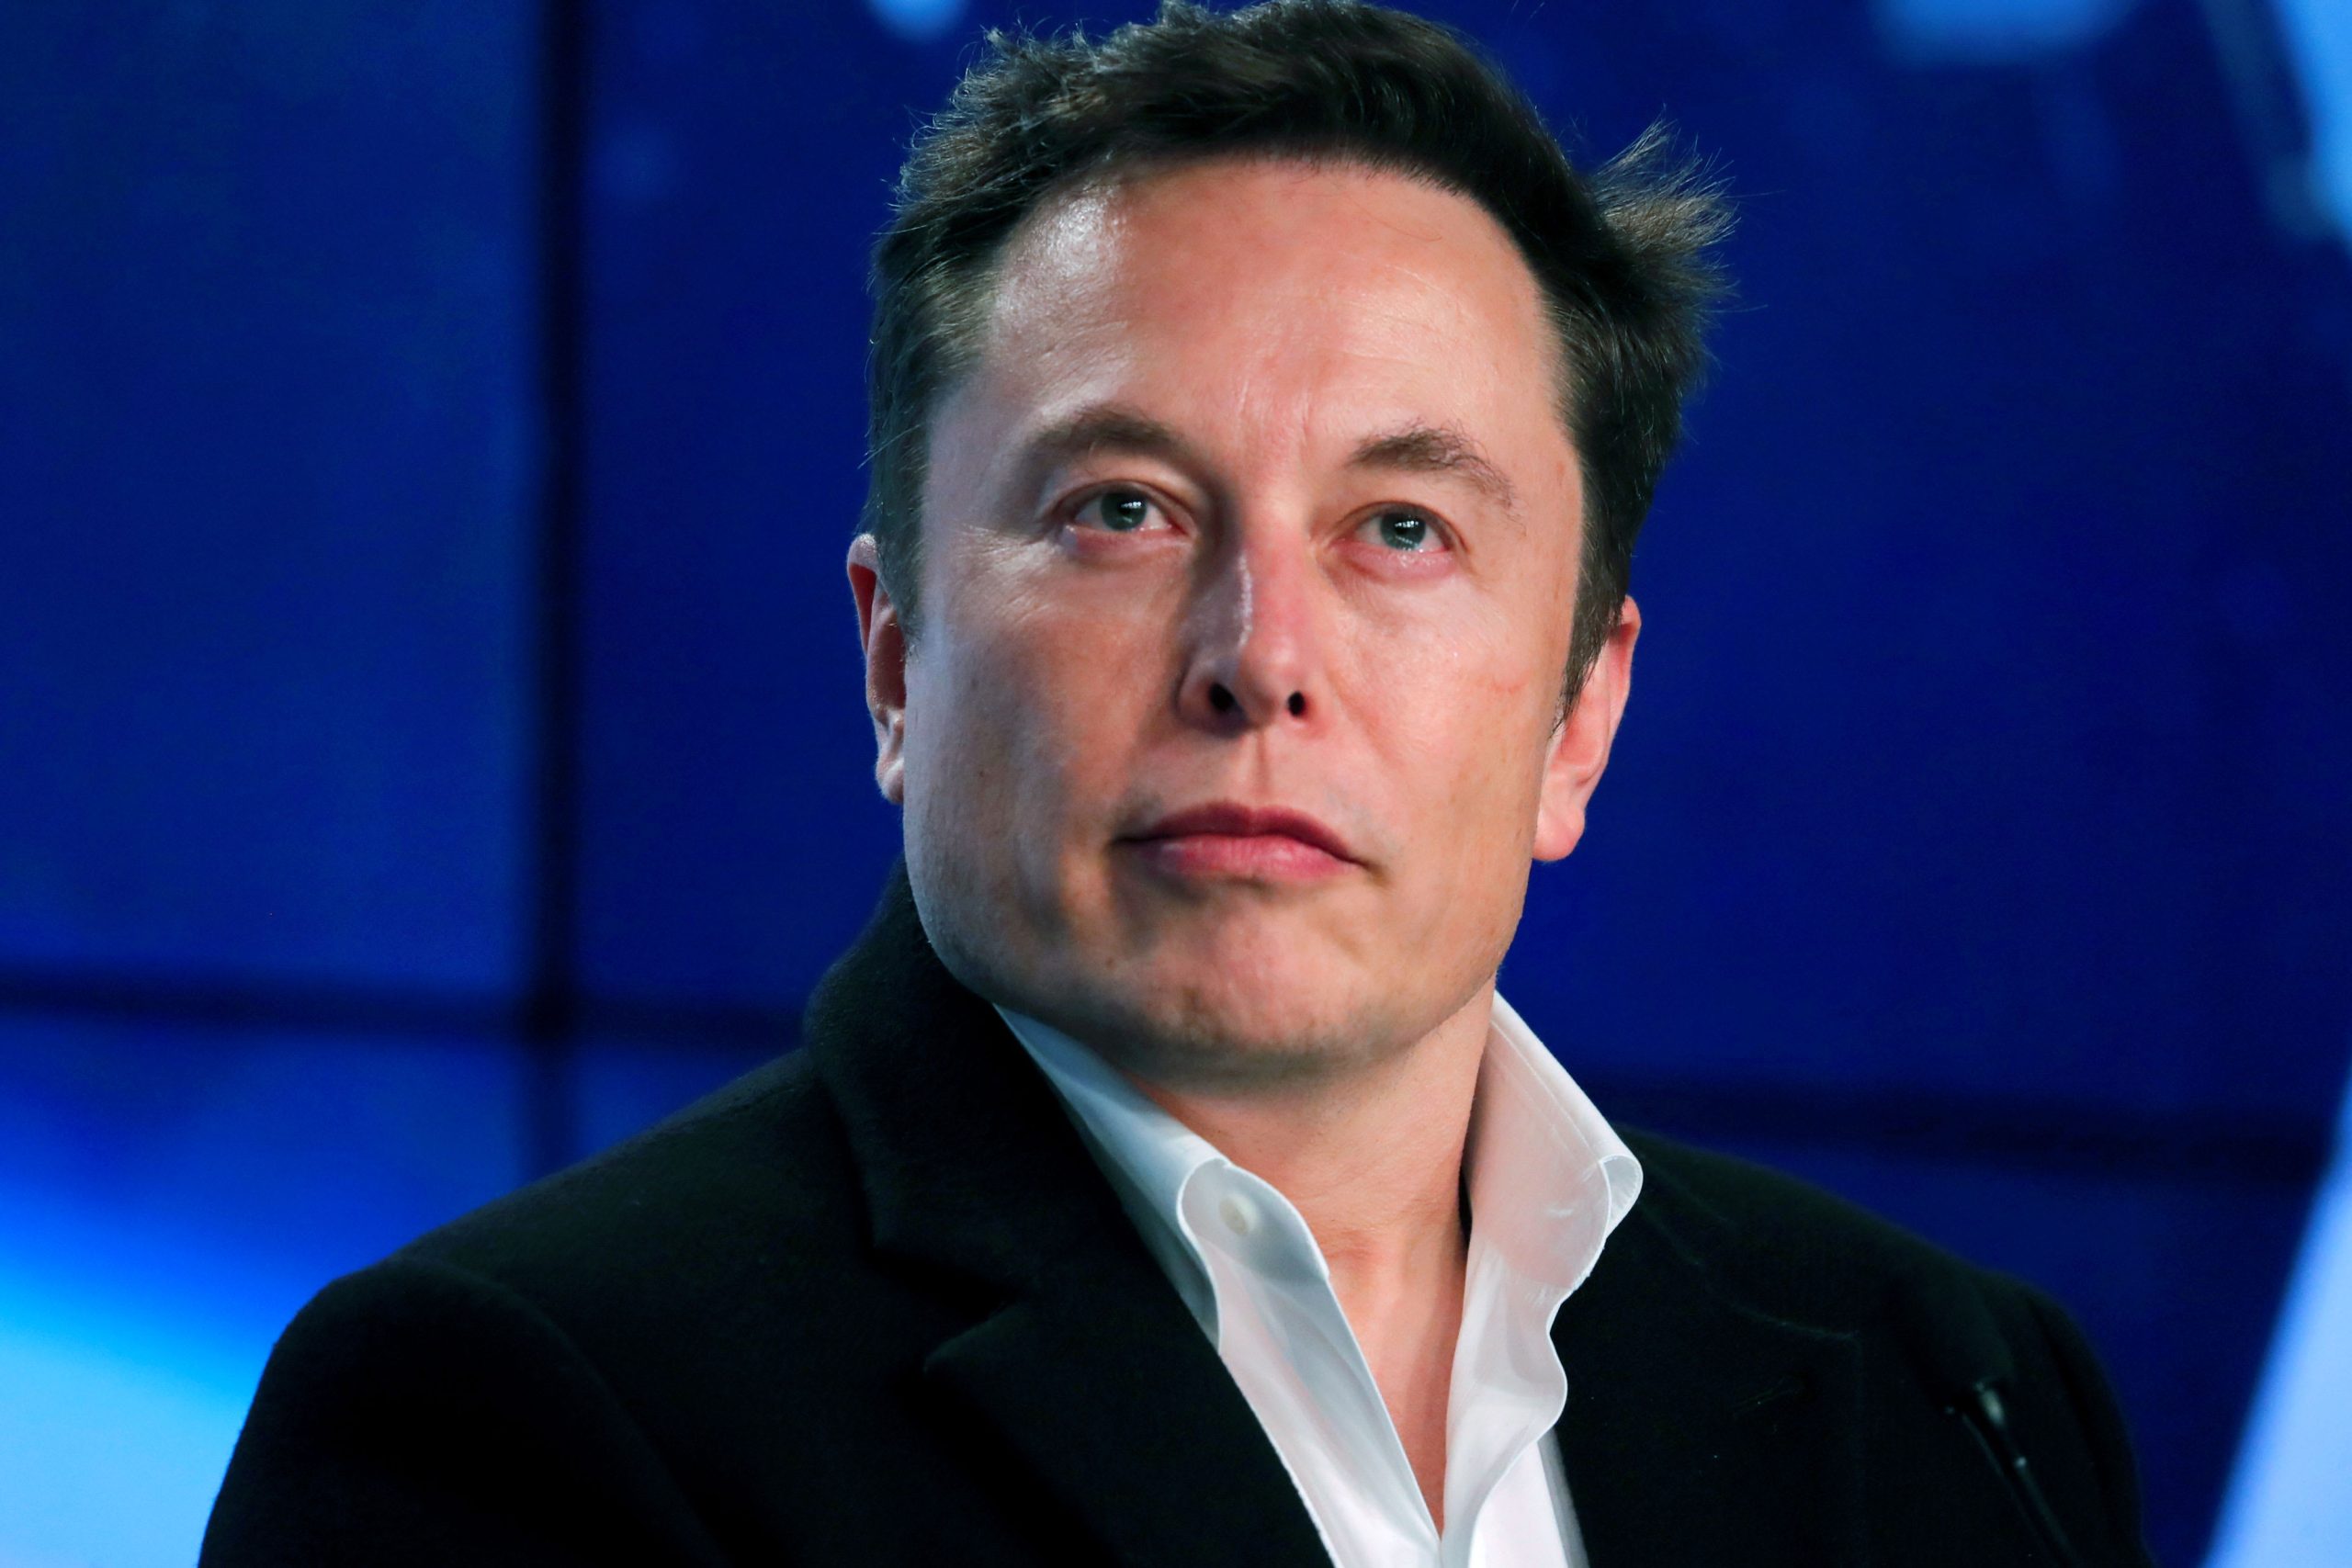 Elon Musk: Reichster Mensch der Welt durch Ausbeutung während Corona